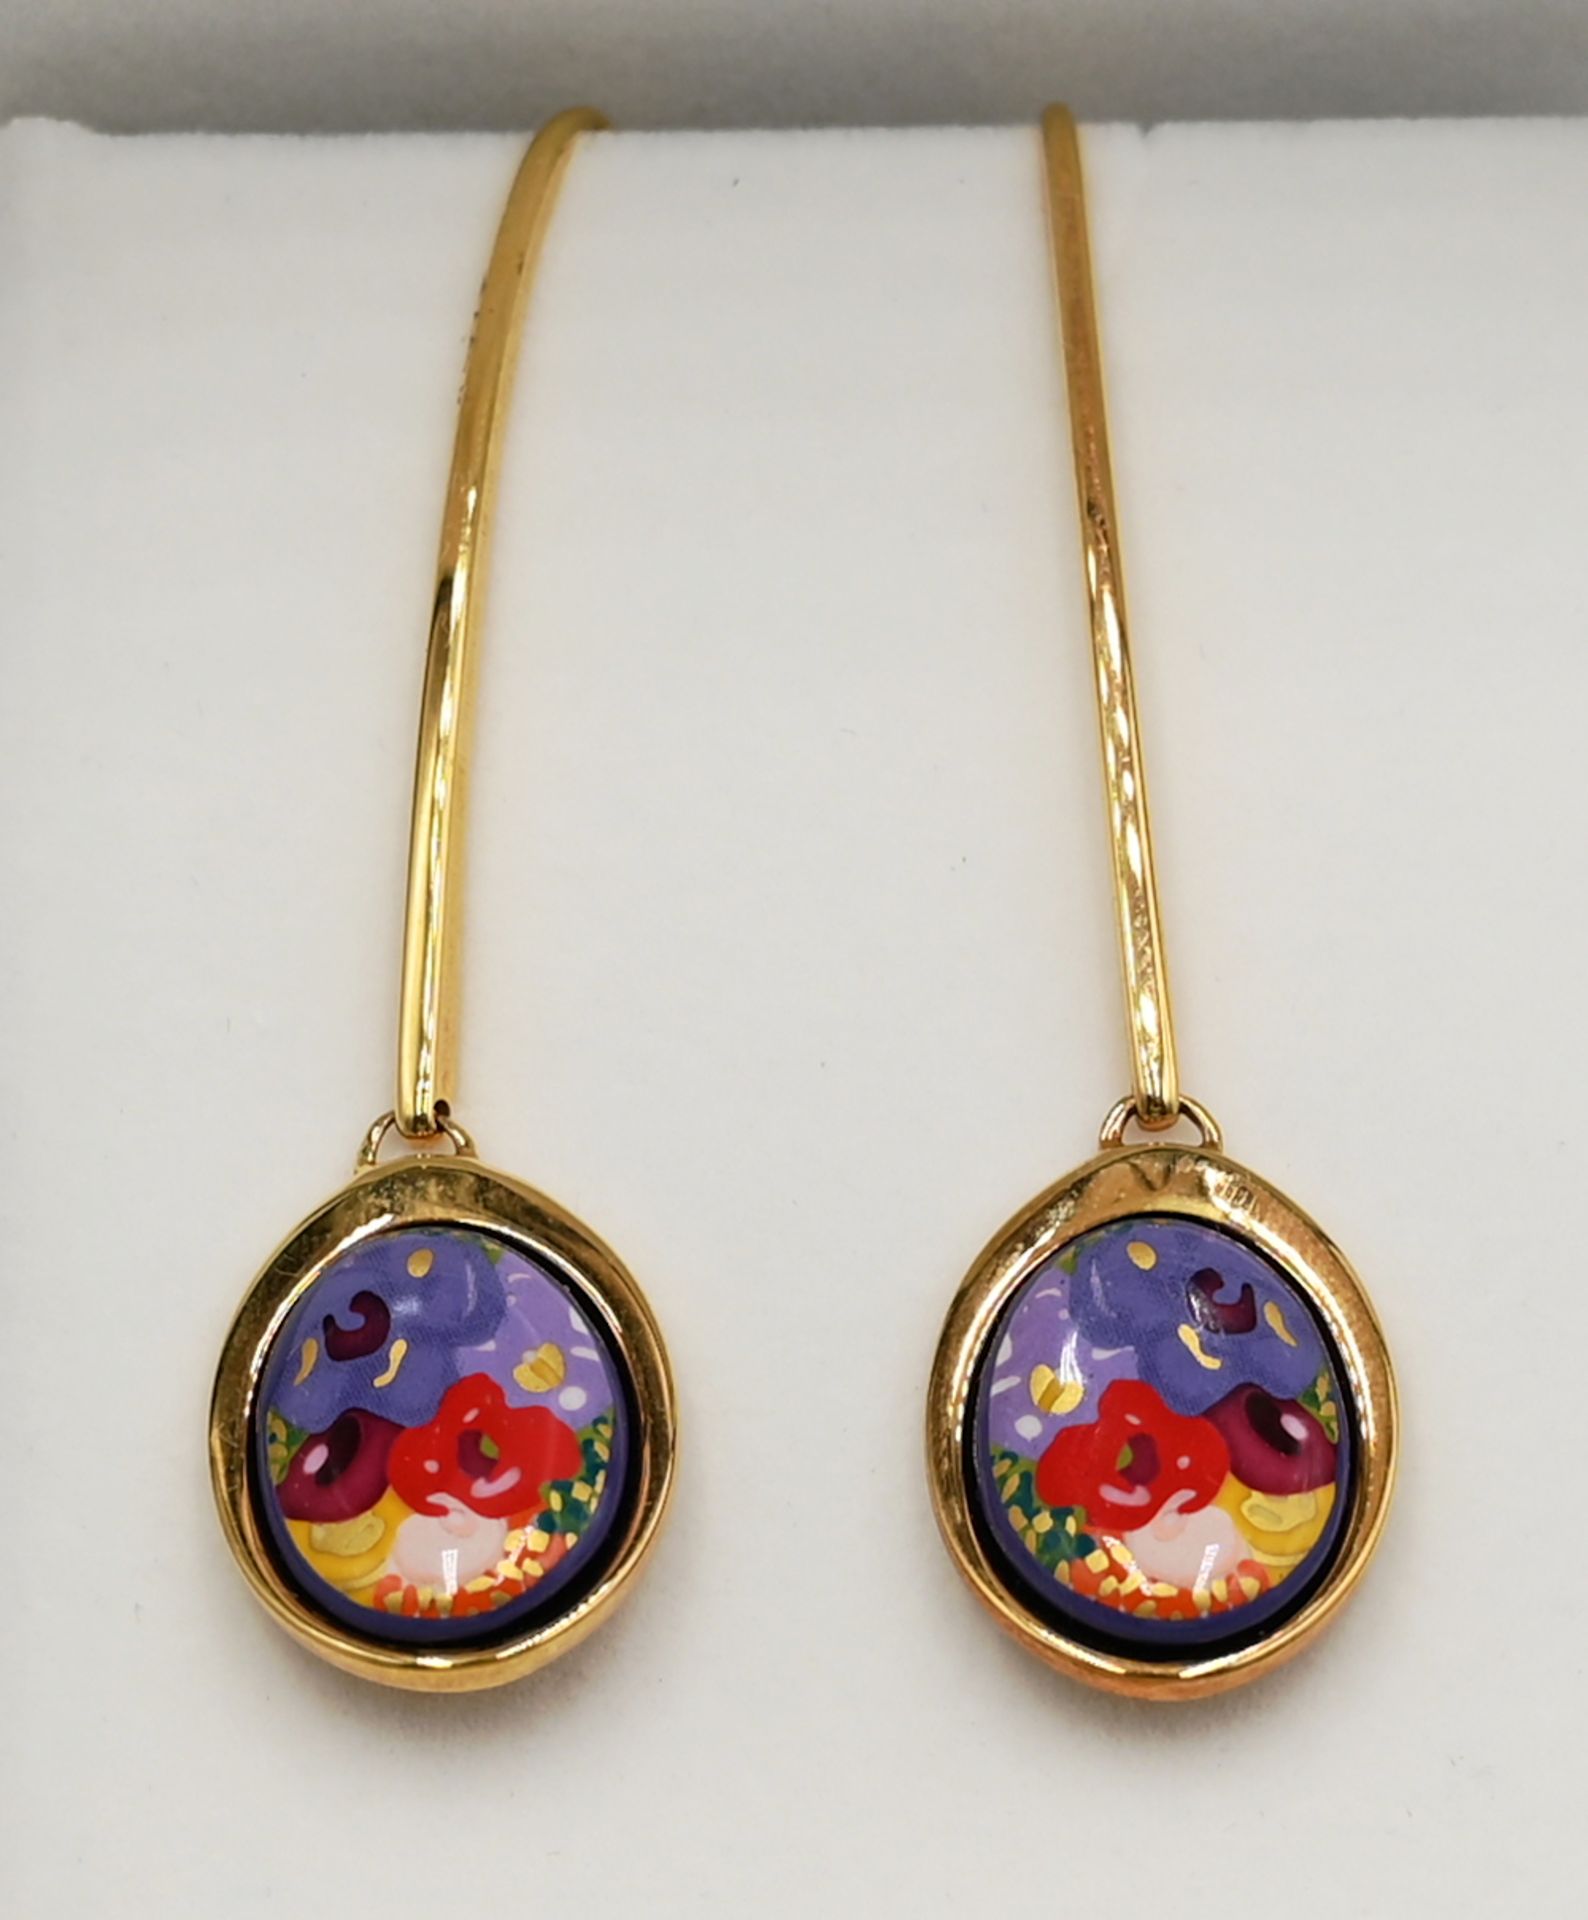 1 Paar Ohrringe FREY WILLE Metall vergoldet, aus der Serie "Floral Symphonie", Gesamtlänge ca. 6cm,